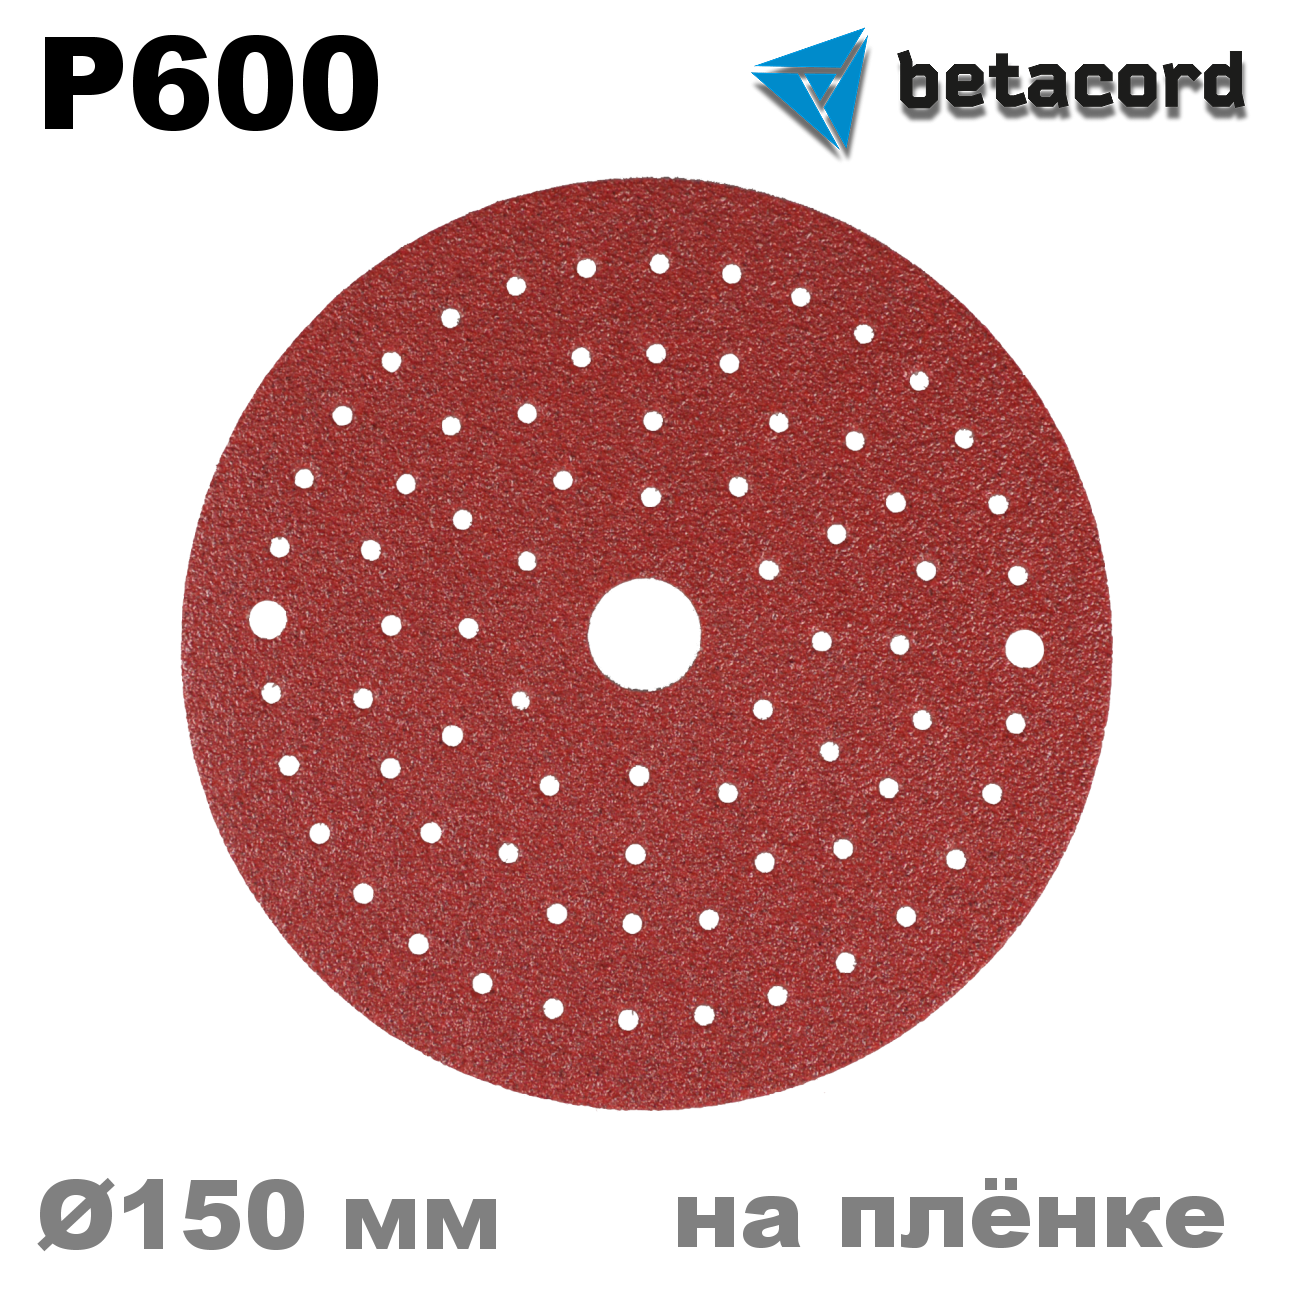 Шлифовальные круги на липучке Betacord P600 150 мм (100 шт)